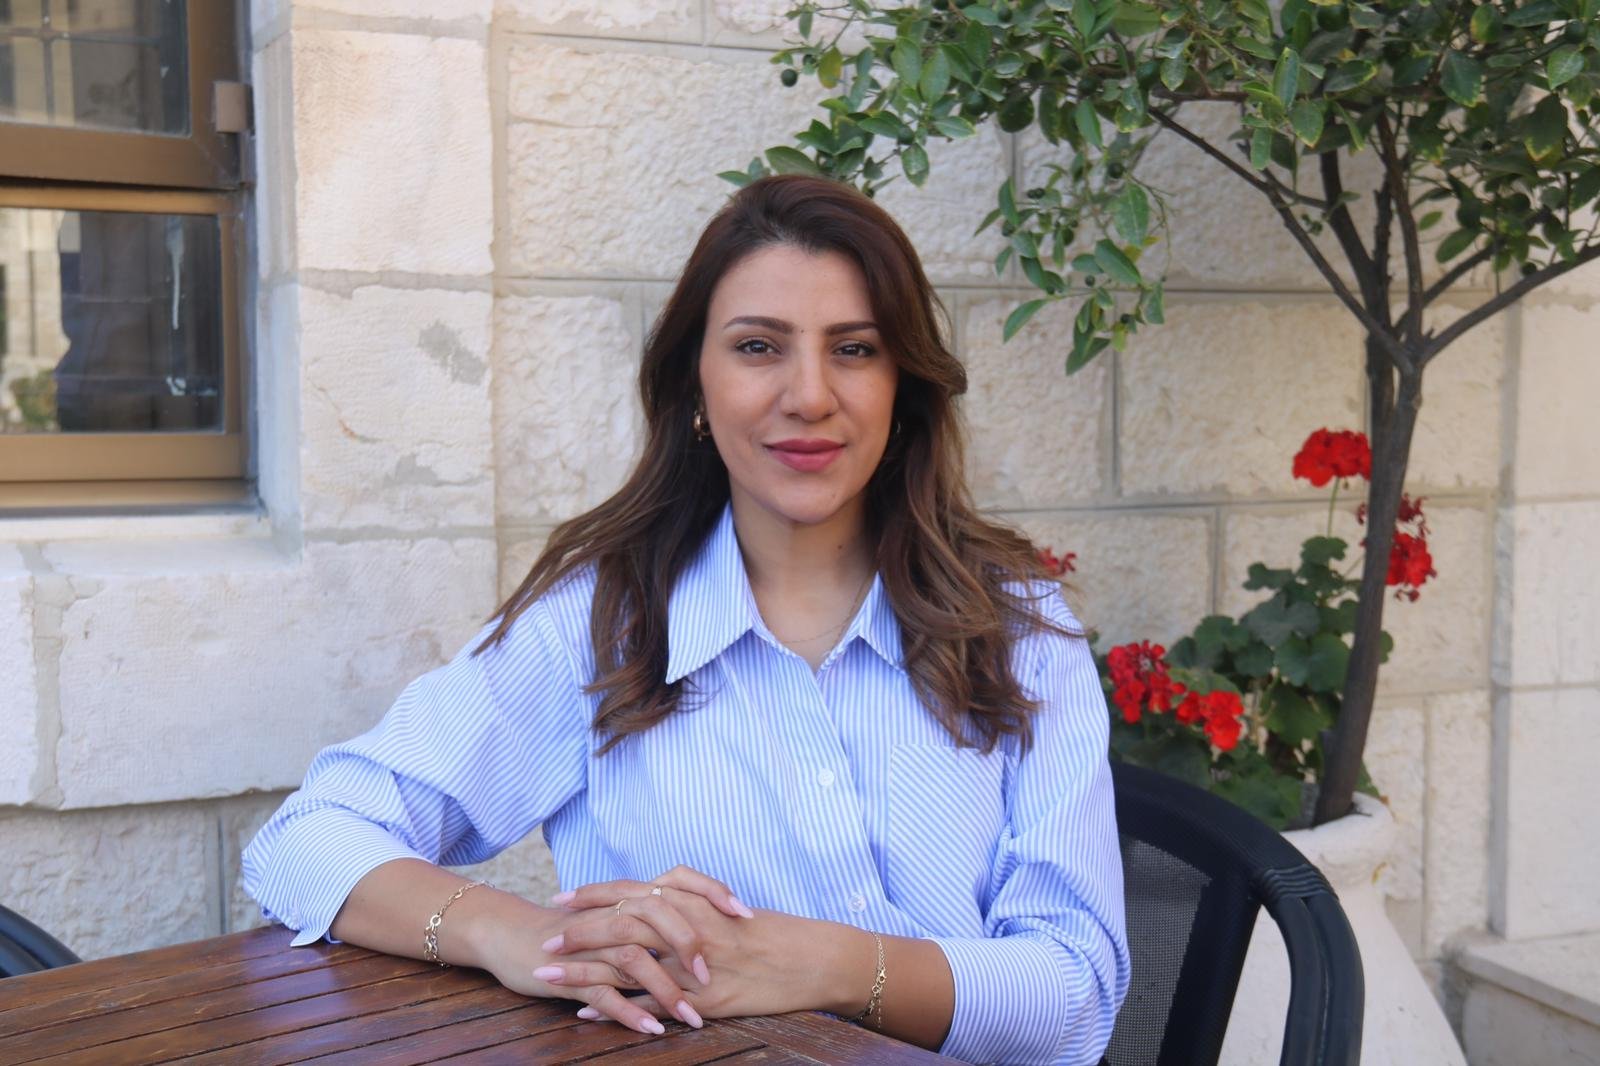 سندس الحوت المرشحة لانتخابات بلدية القدس لـ "بكرا": الانتخابات فرصة لتغيير الواقع المأساوي-1